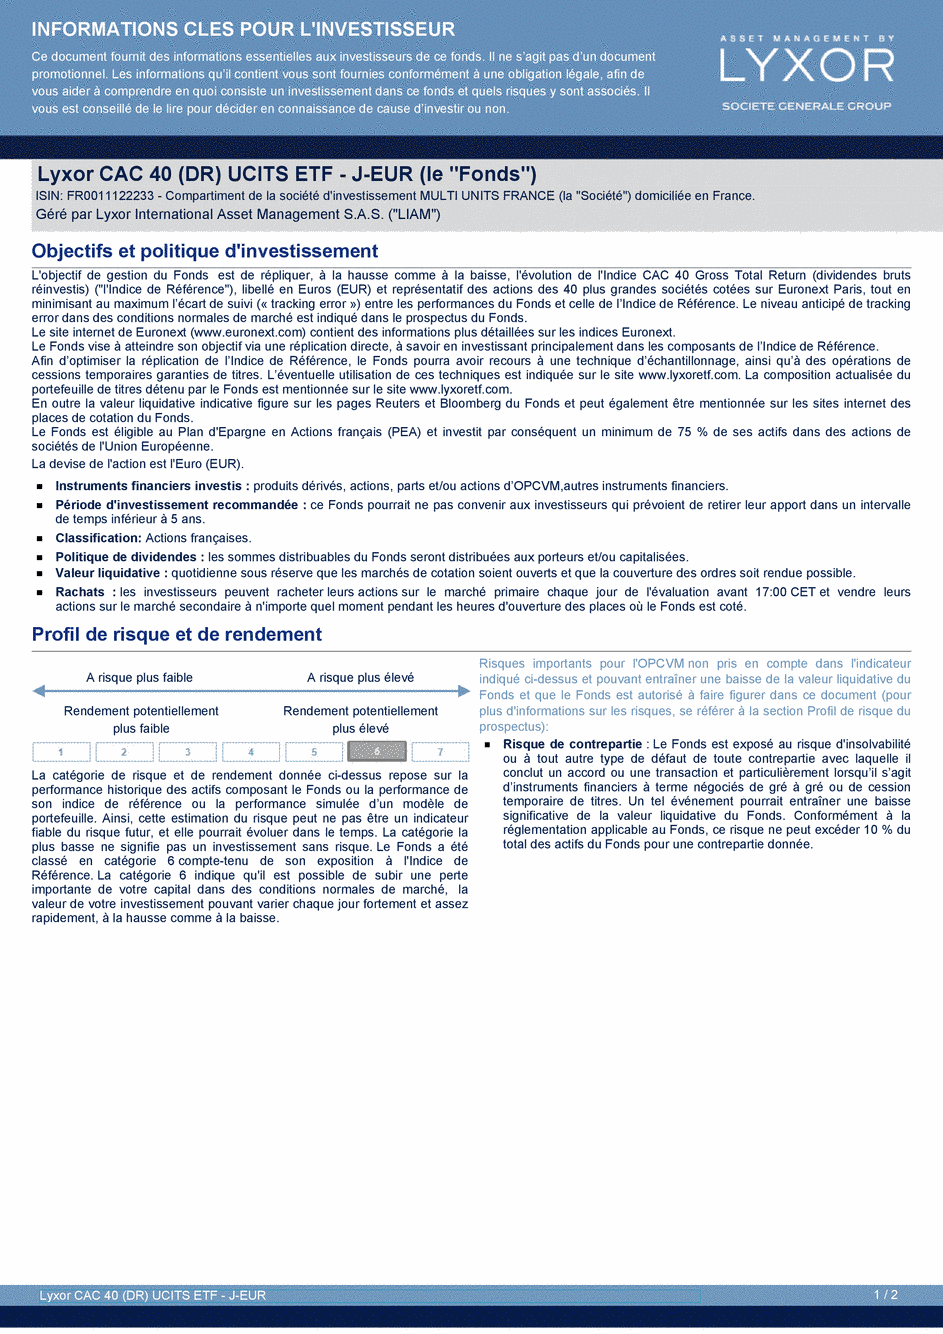 DICI Lyxor CAC 40 (DR) UCITS ETF - J-EUR - 05/09/2019 - Français